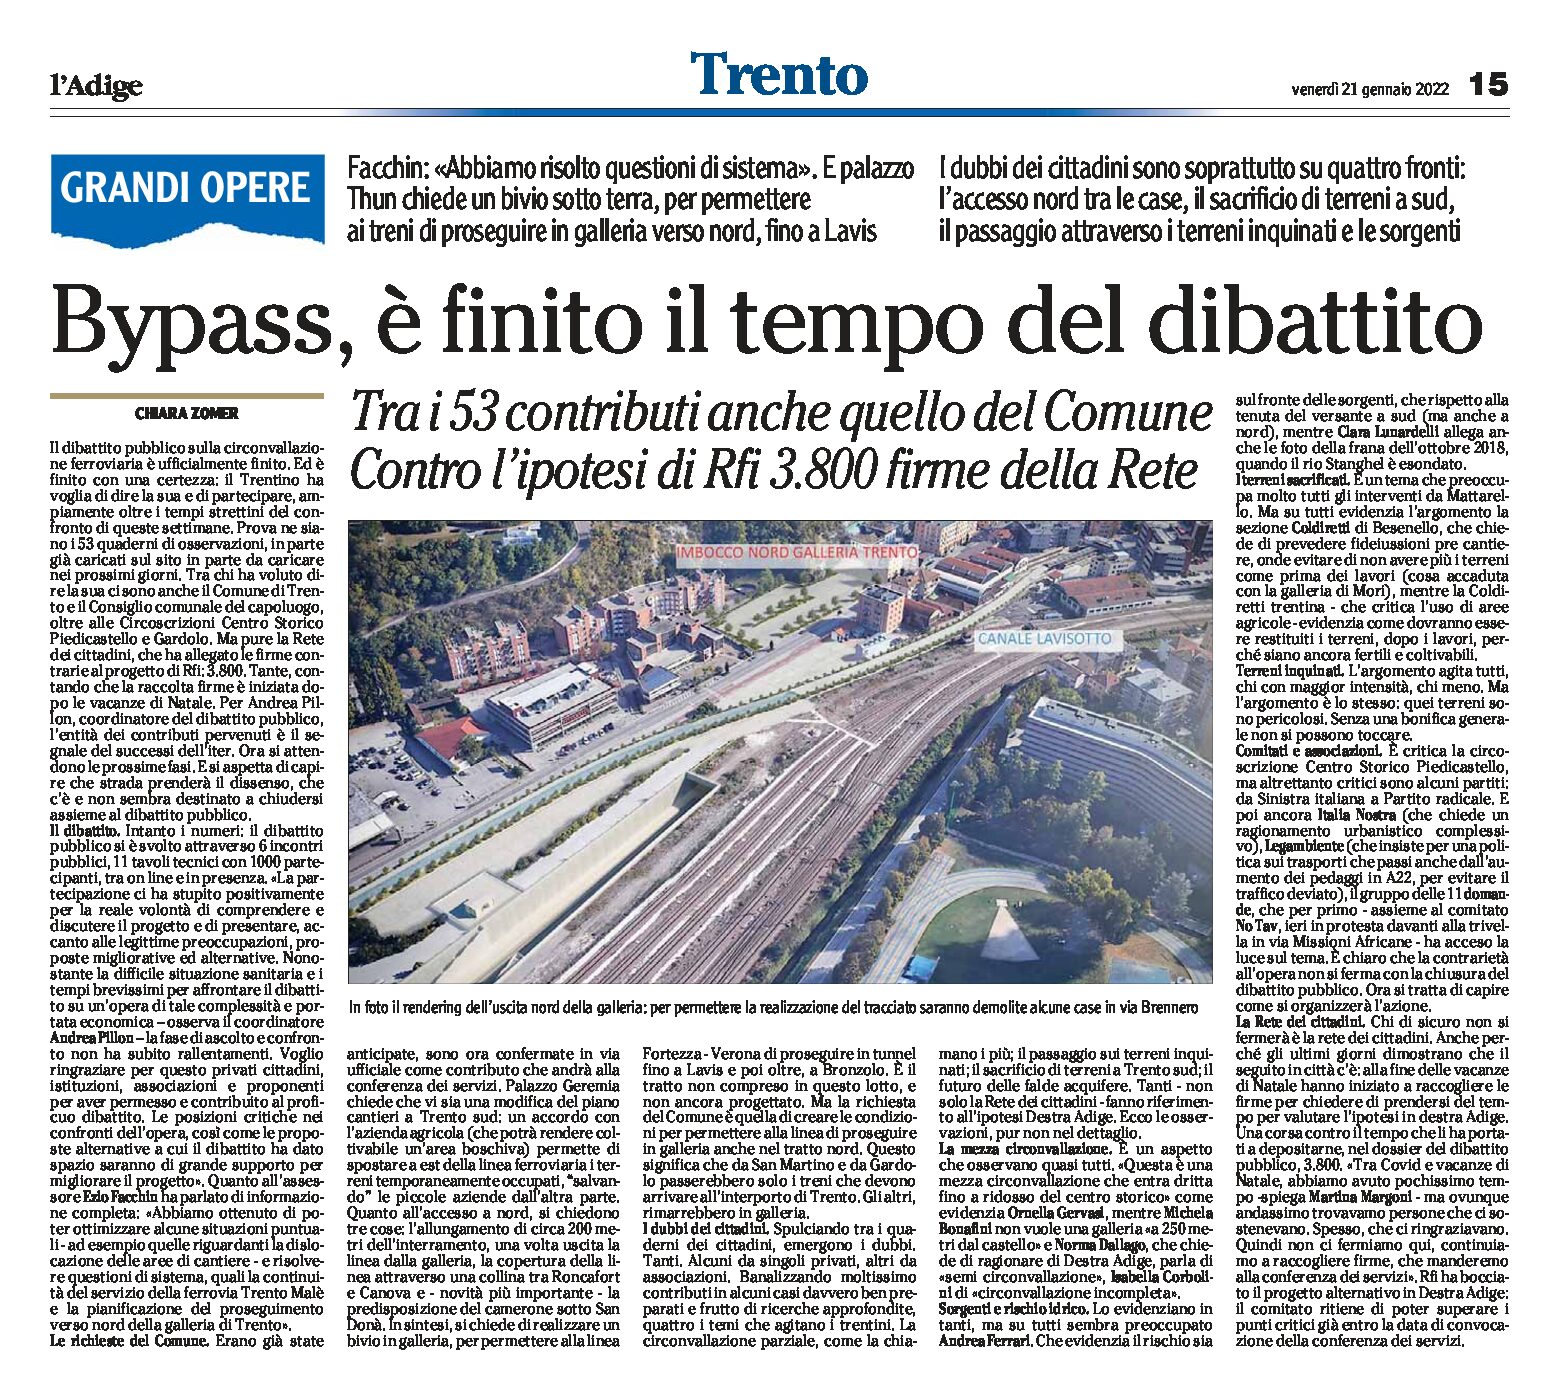 Trento, bypass: è finito il tempo del dibattito. 53 contributi e 3.800 firme della Rete